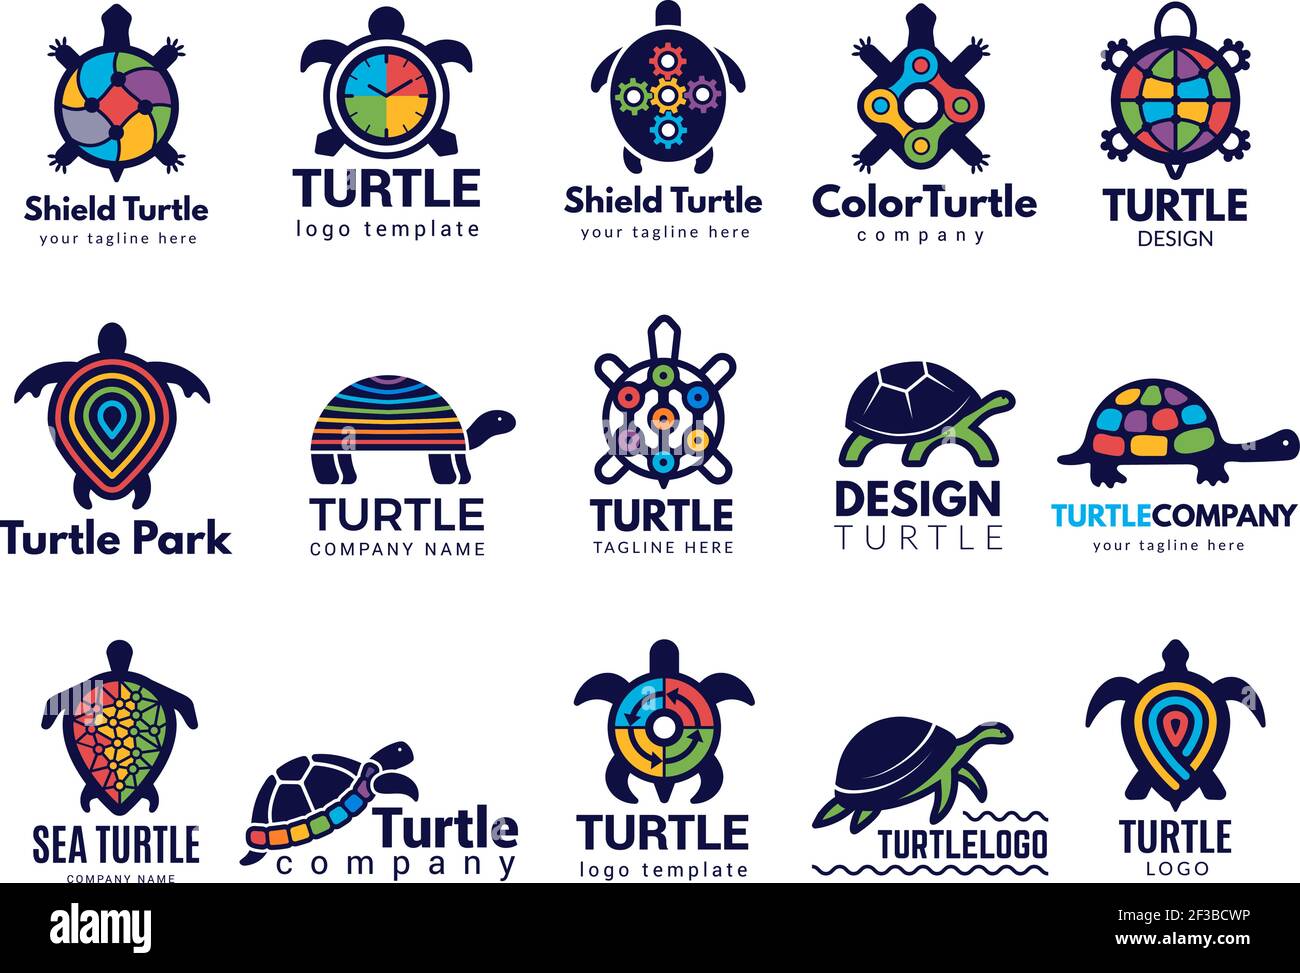 Schildkrötensymbole. Business-Logo wild Meerestiere Schildkröte Vektor farbige stilisierte Bilder Sammlung Stock Vektor